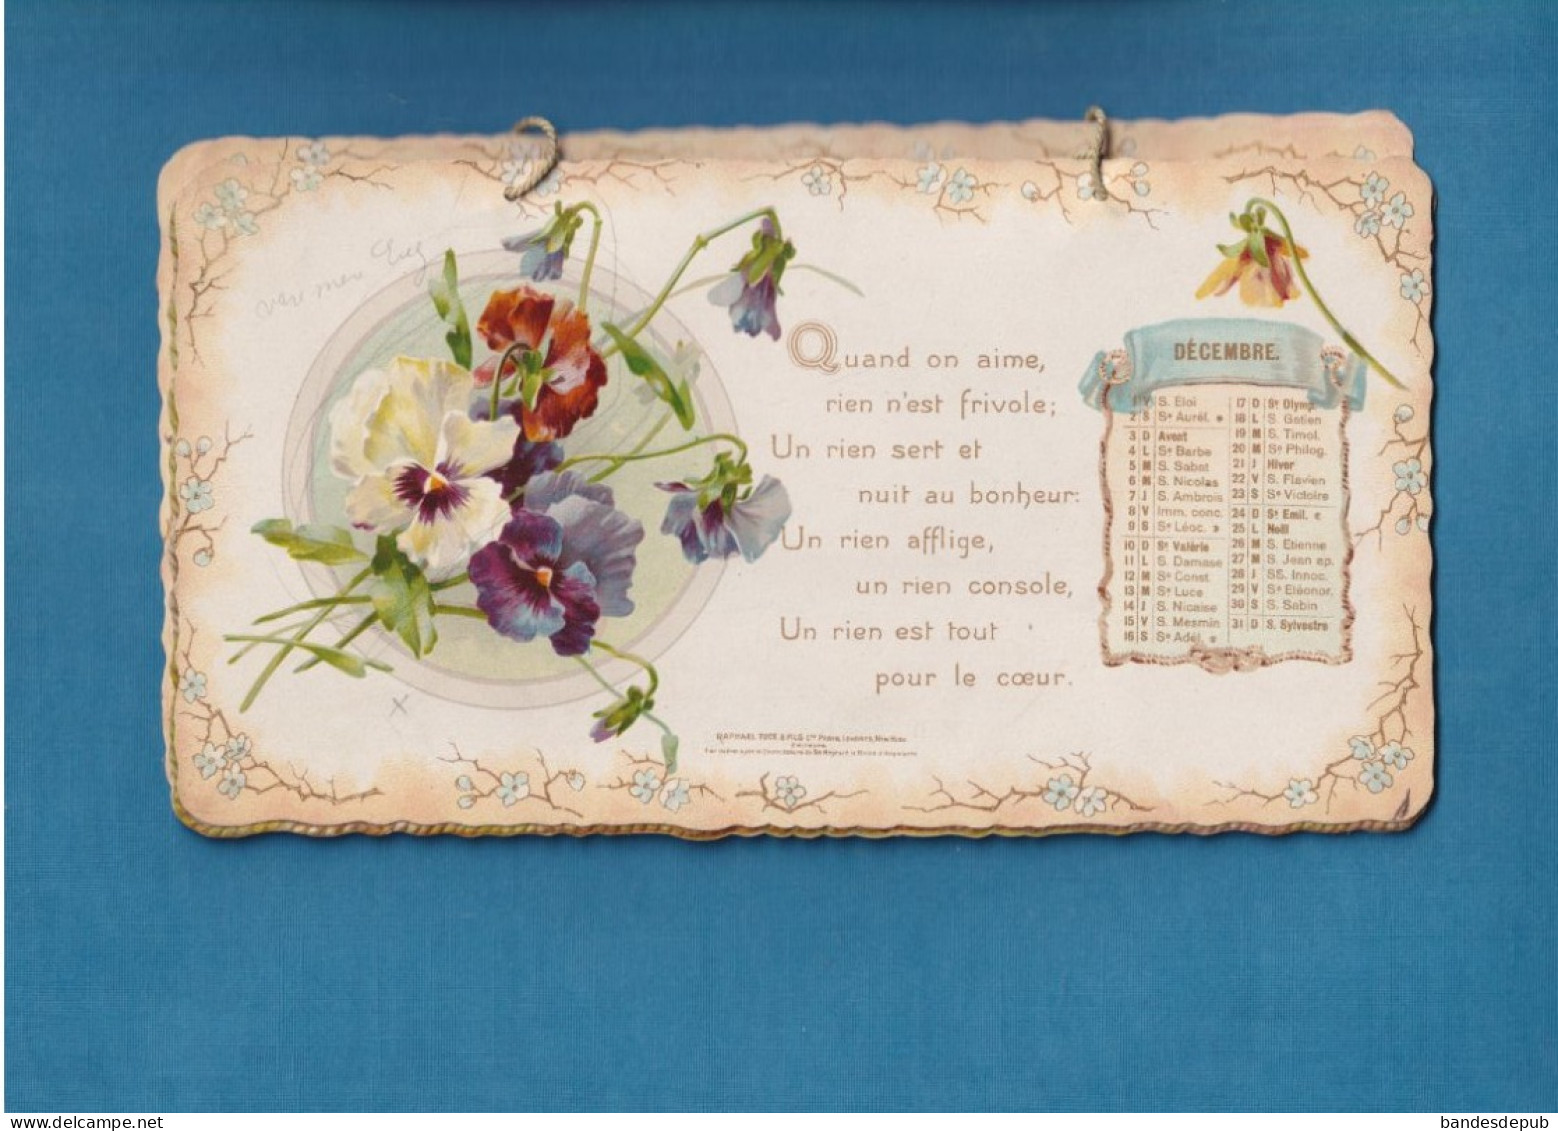 RARE et superbe  calendrier 1899 RAPHAEL TUCK gaufré doré FLEURS DE L' AN ill style Klein 8 pages cordonnet origine